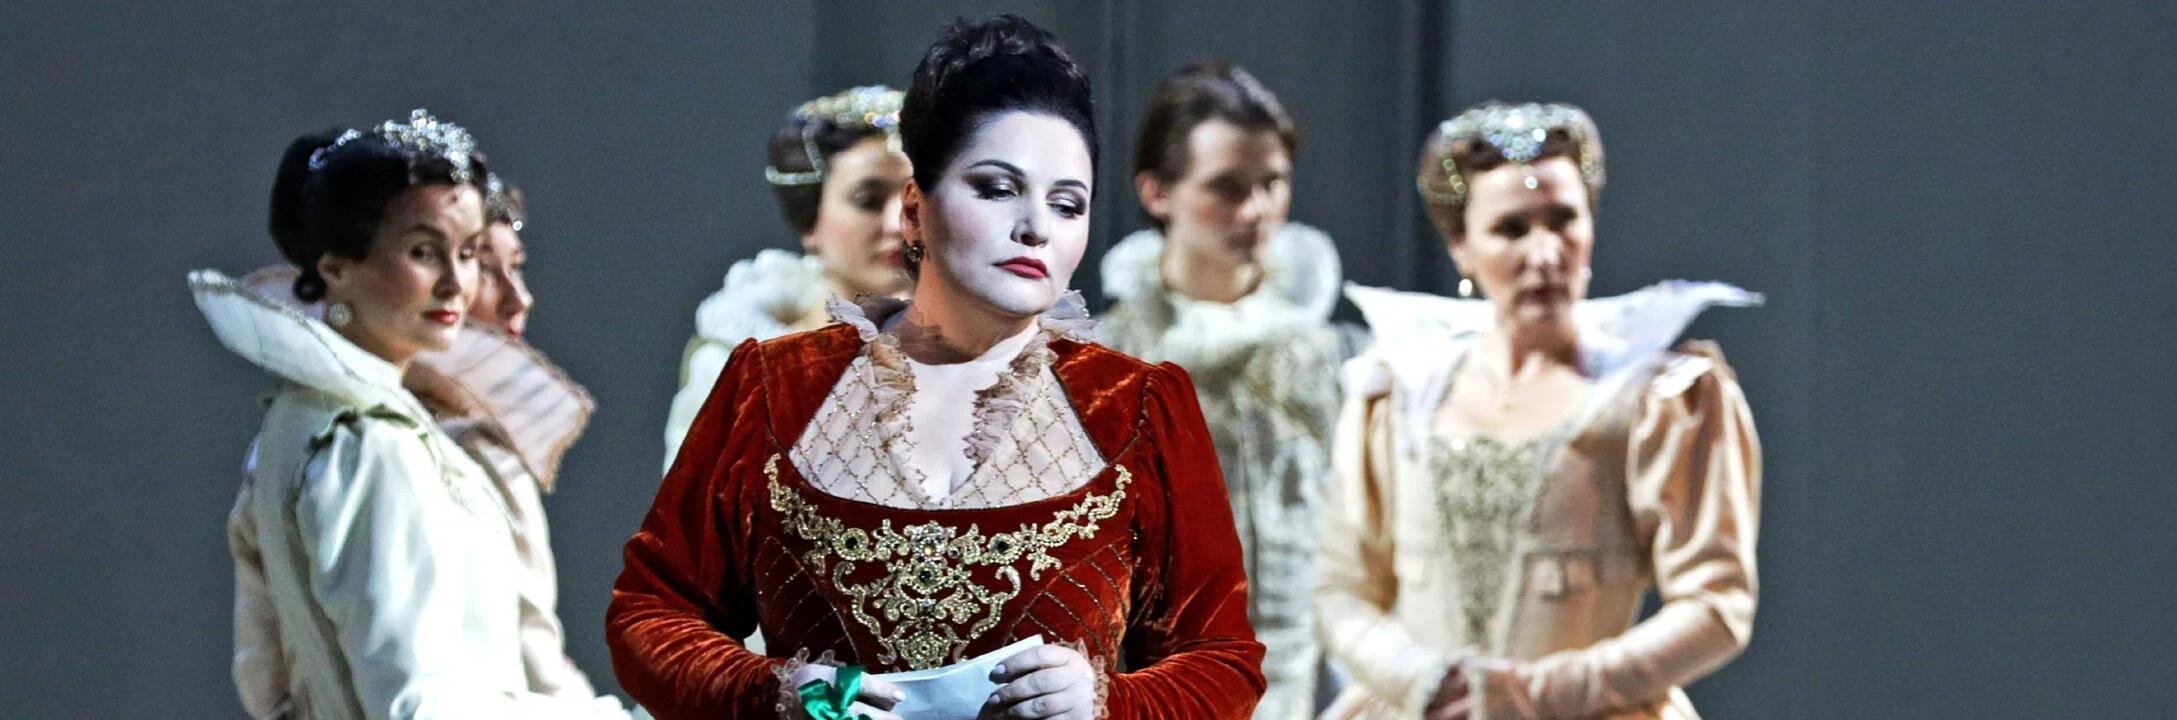 Опера «Дон Карлос» на Новой сцене Мариинского театра